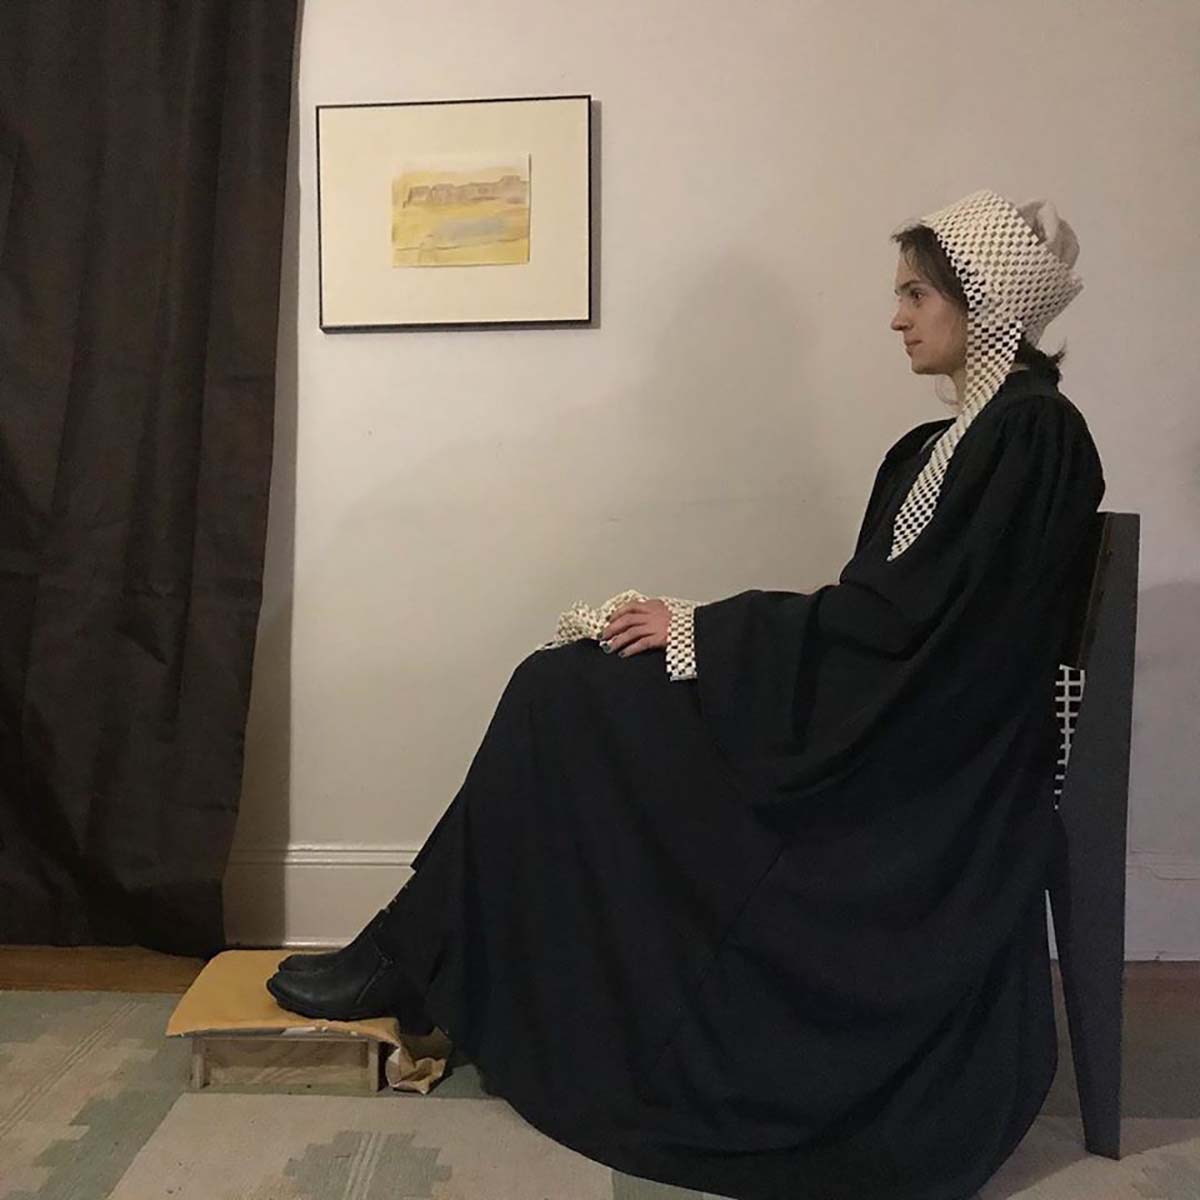 «Аранжировка в сером и черном, № 1: портрет матери» — наиболее известная картина американского художника Джеймса Уистлера.